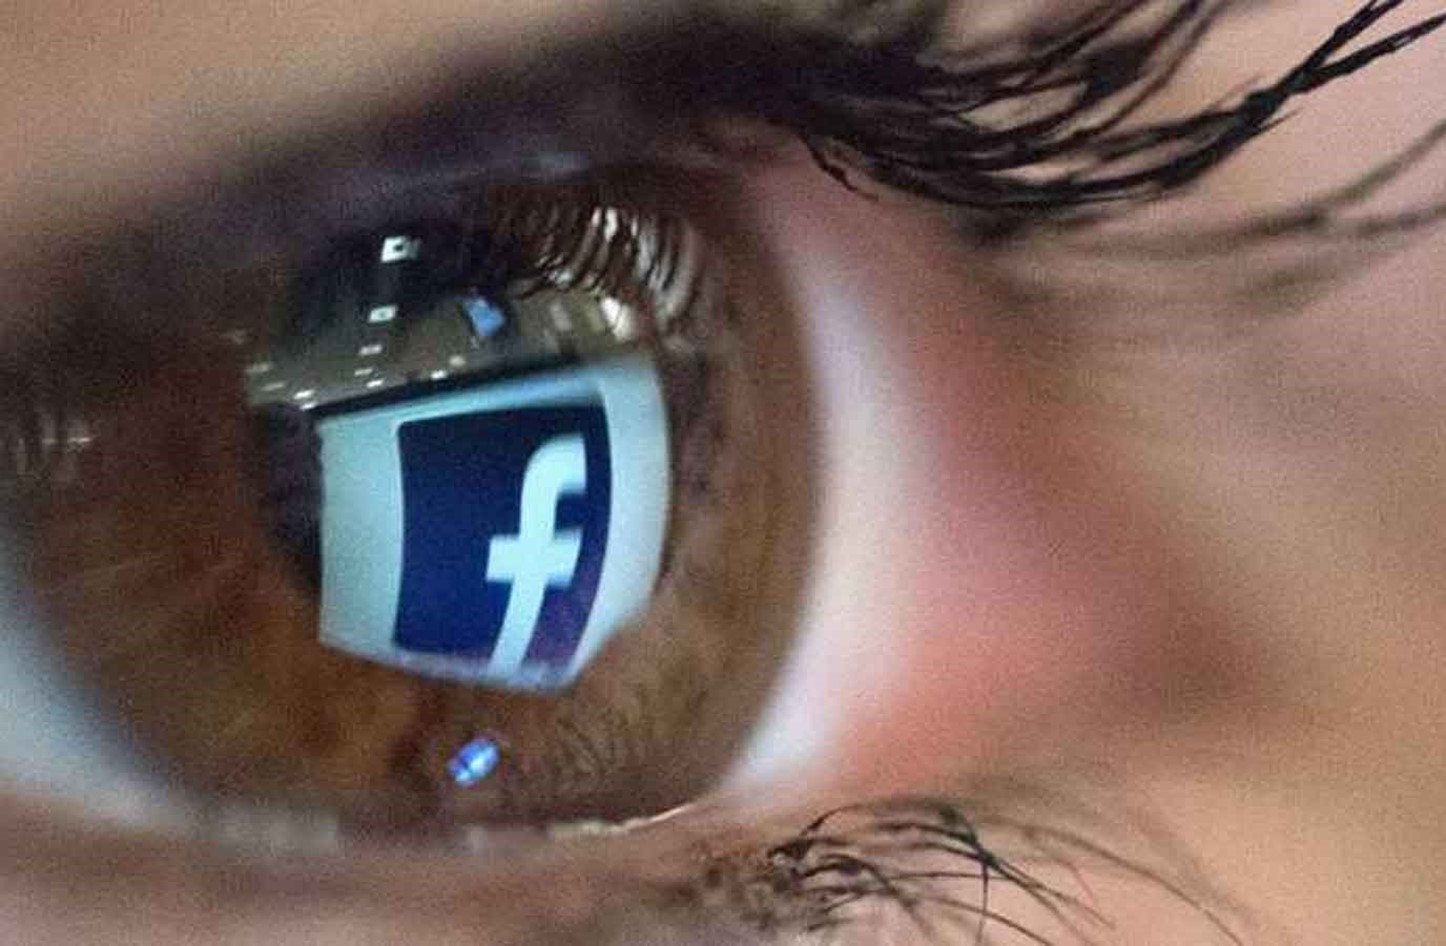 براءة اختراع تكشف خطة فيسبوك للتجسس على المستخدمين.